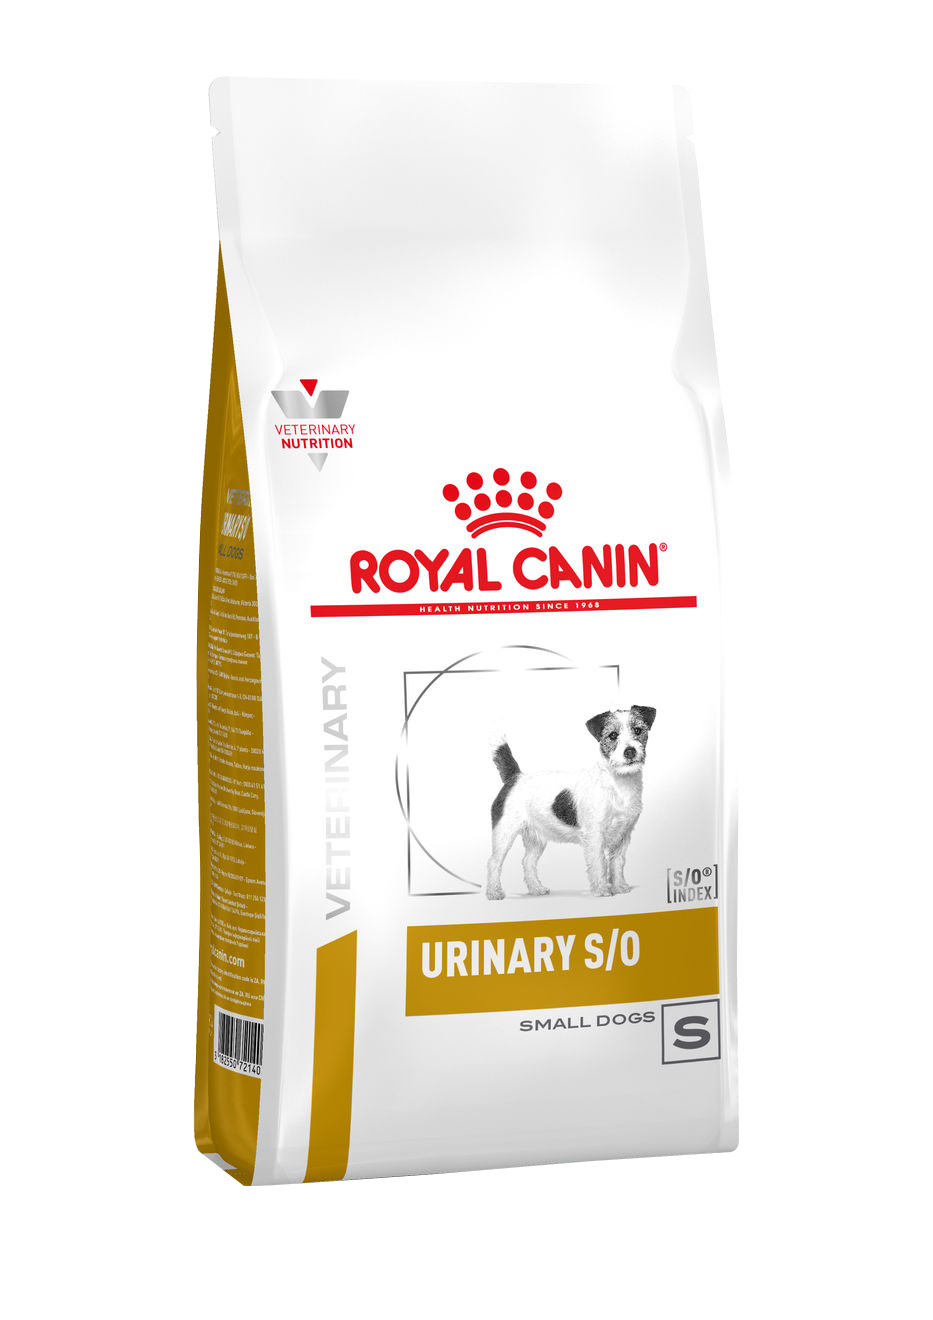 ROYAL CANIN Urinary S/O Small Dogs - Диета для собак мелких размеров при заболеваниях дистального отдела мочевыделительной системы